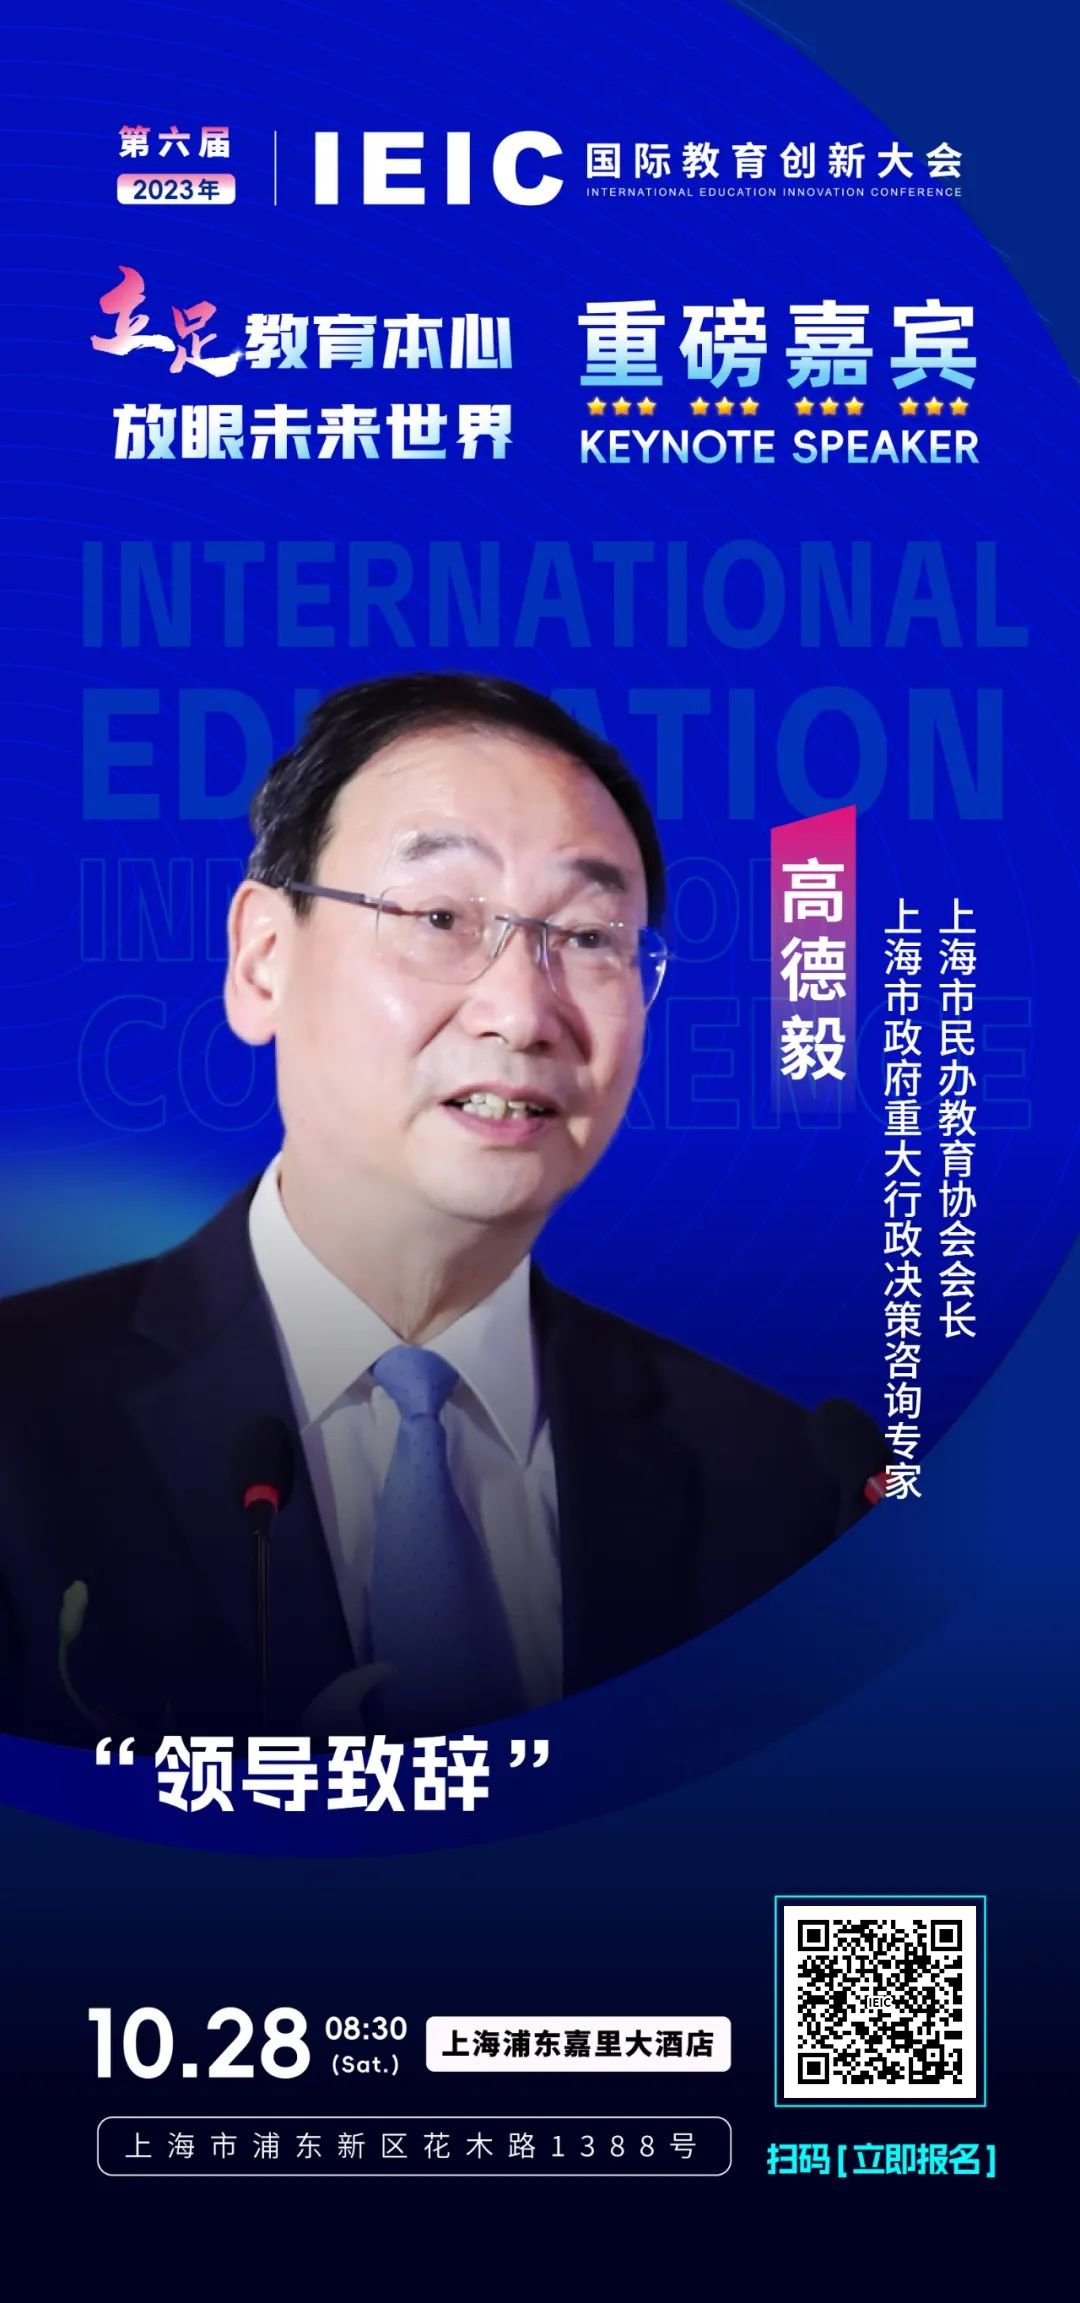 上海市民办教育协会会长高德毅将出席第六届IEIC国际教育创新大会